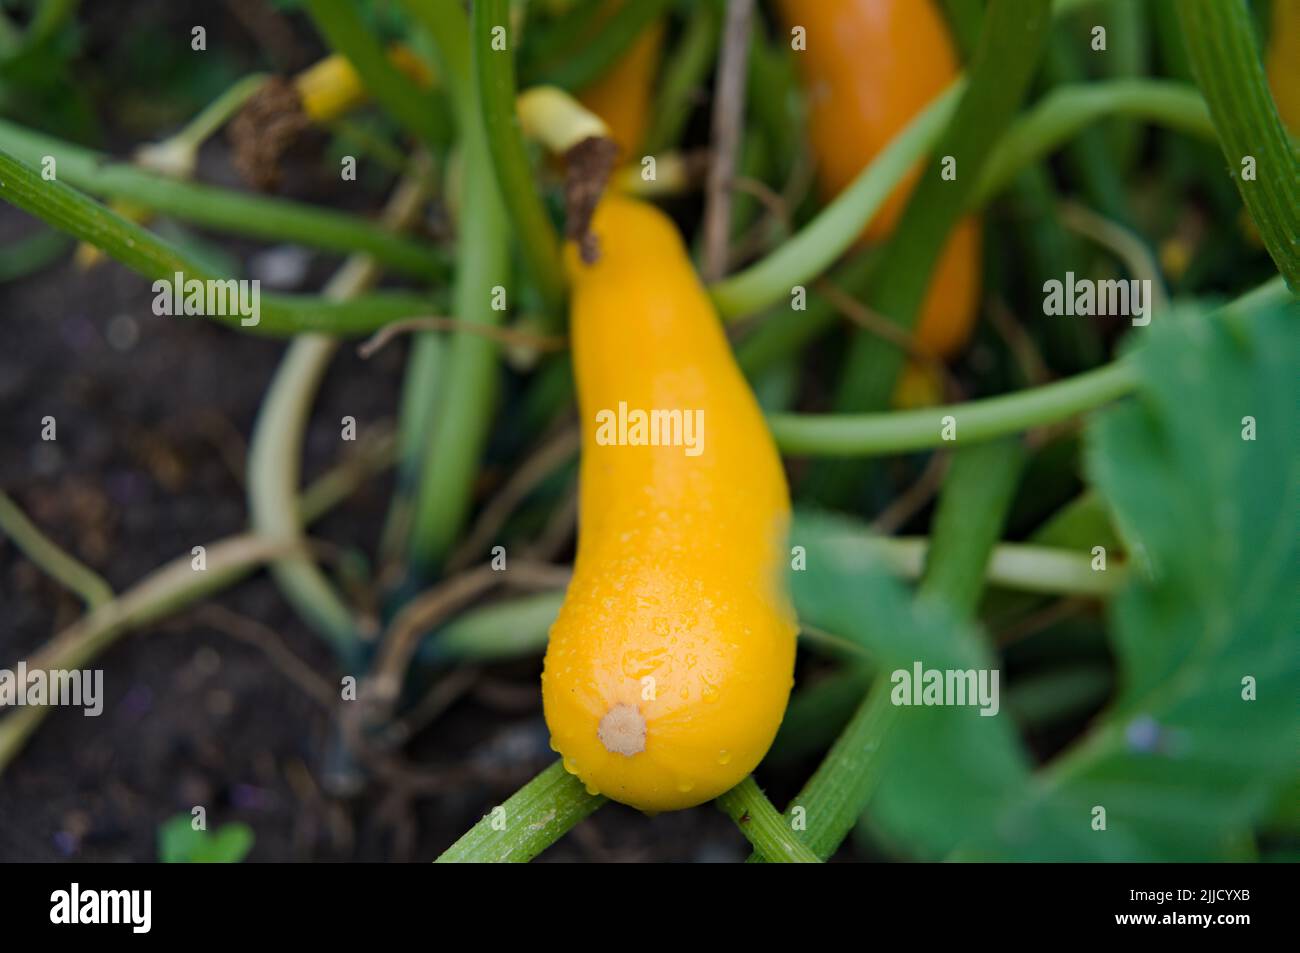 Yellow fresh fruit of zucchini in the garden Stock Photo